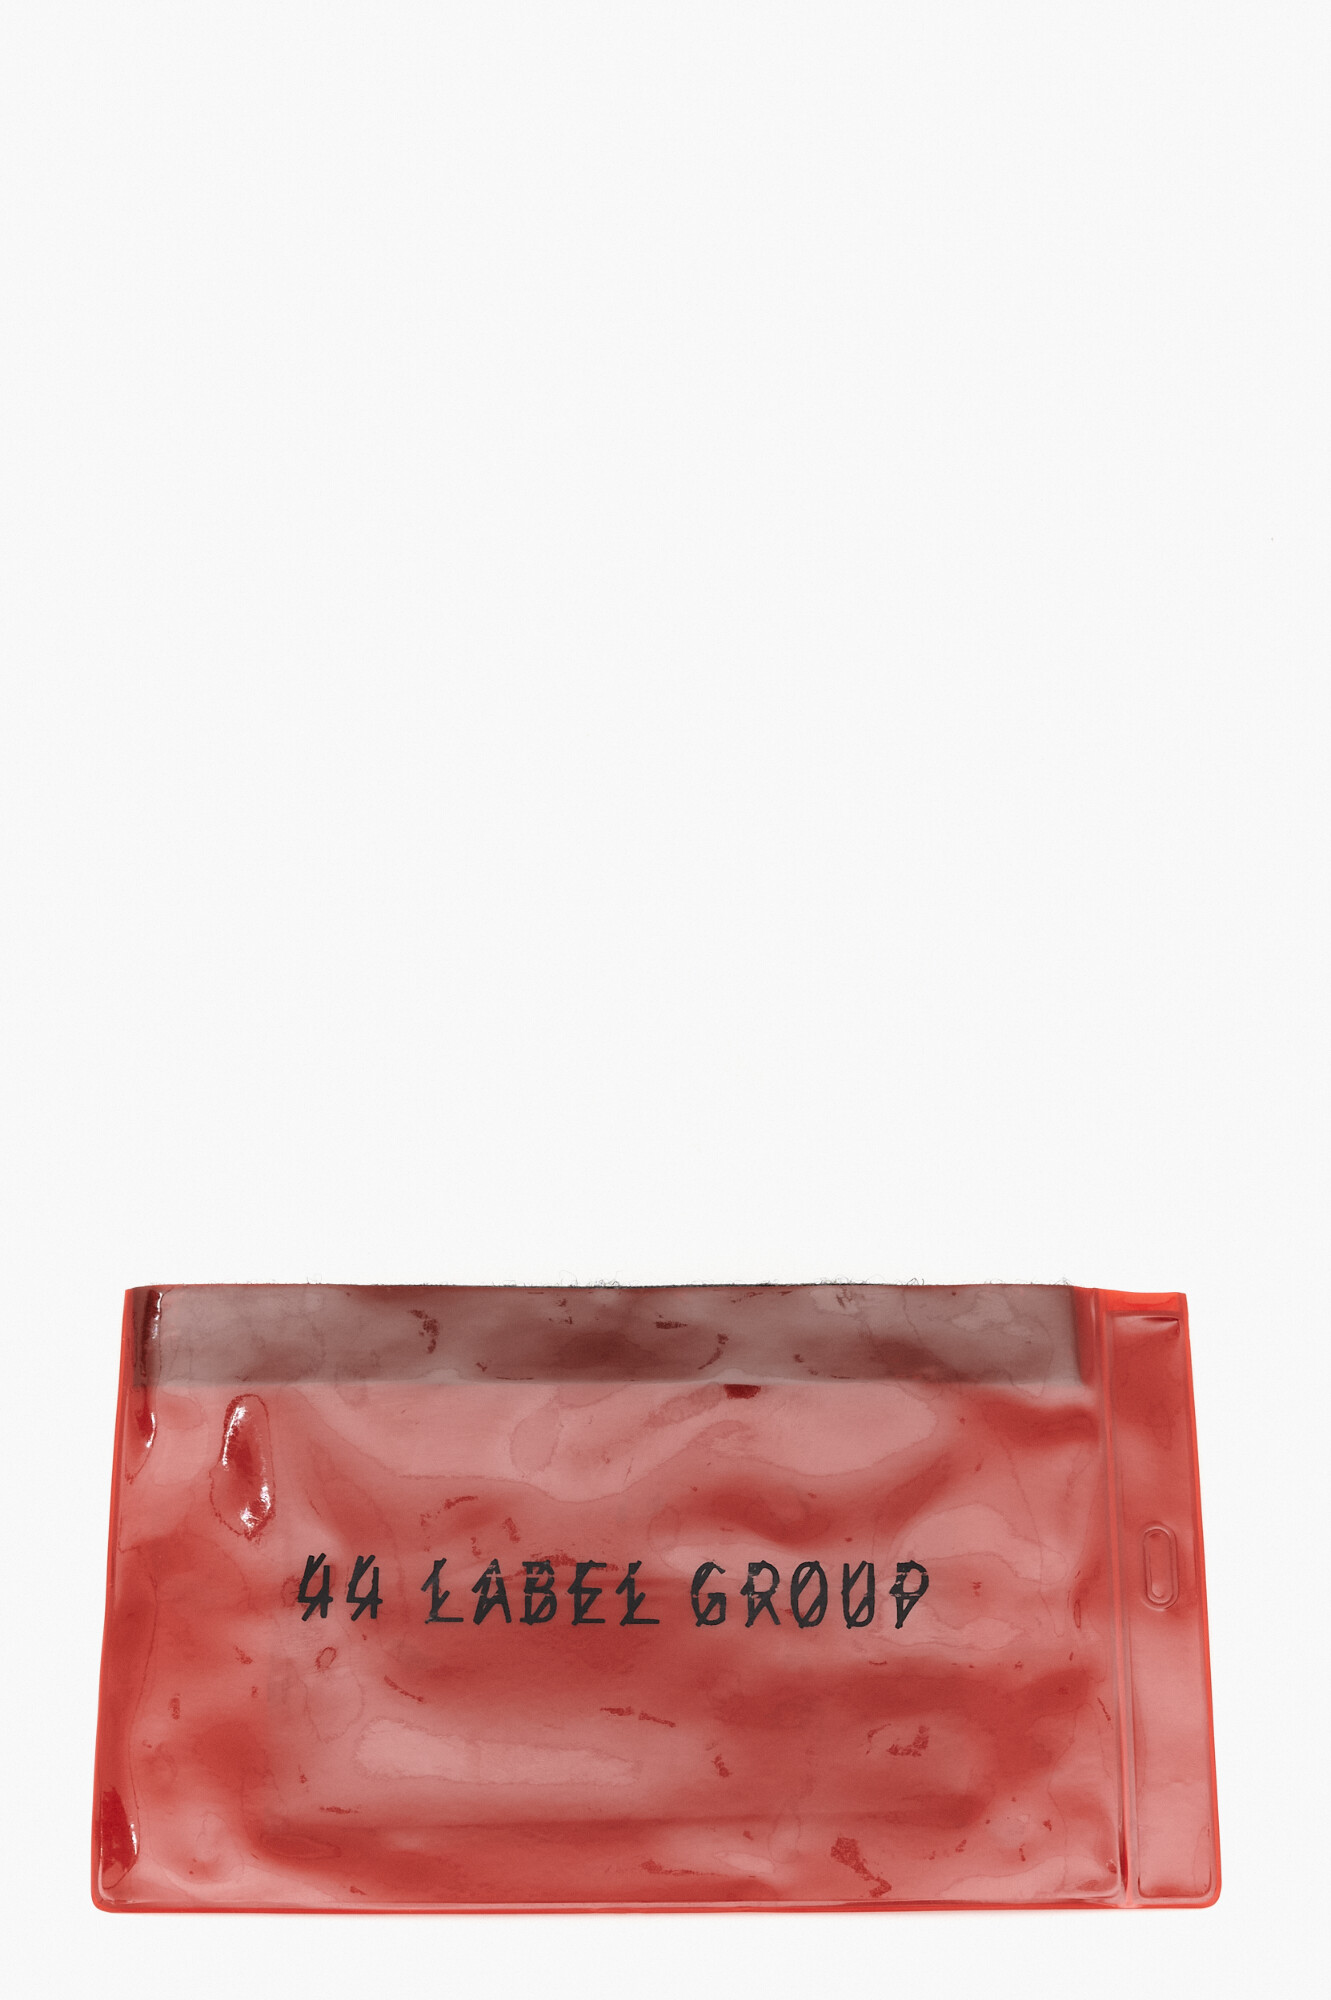 44 Label Group Очки